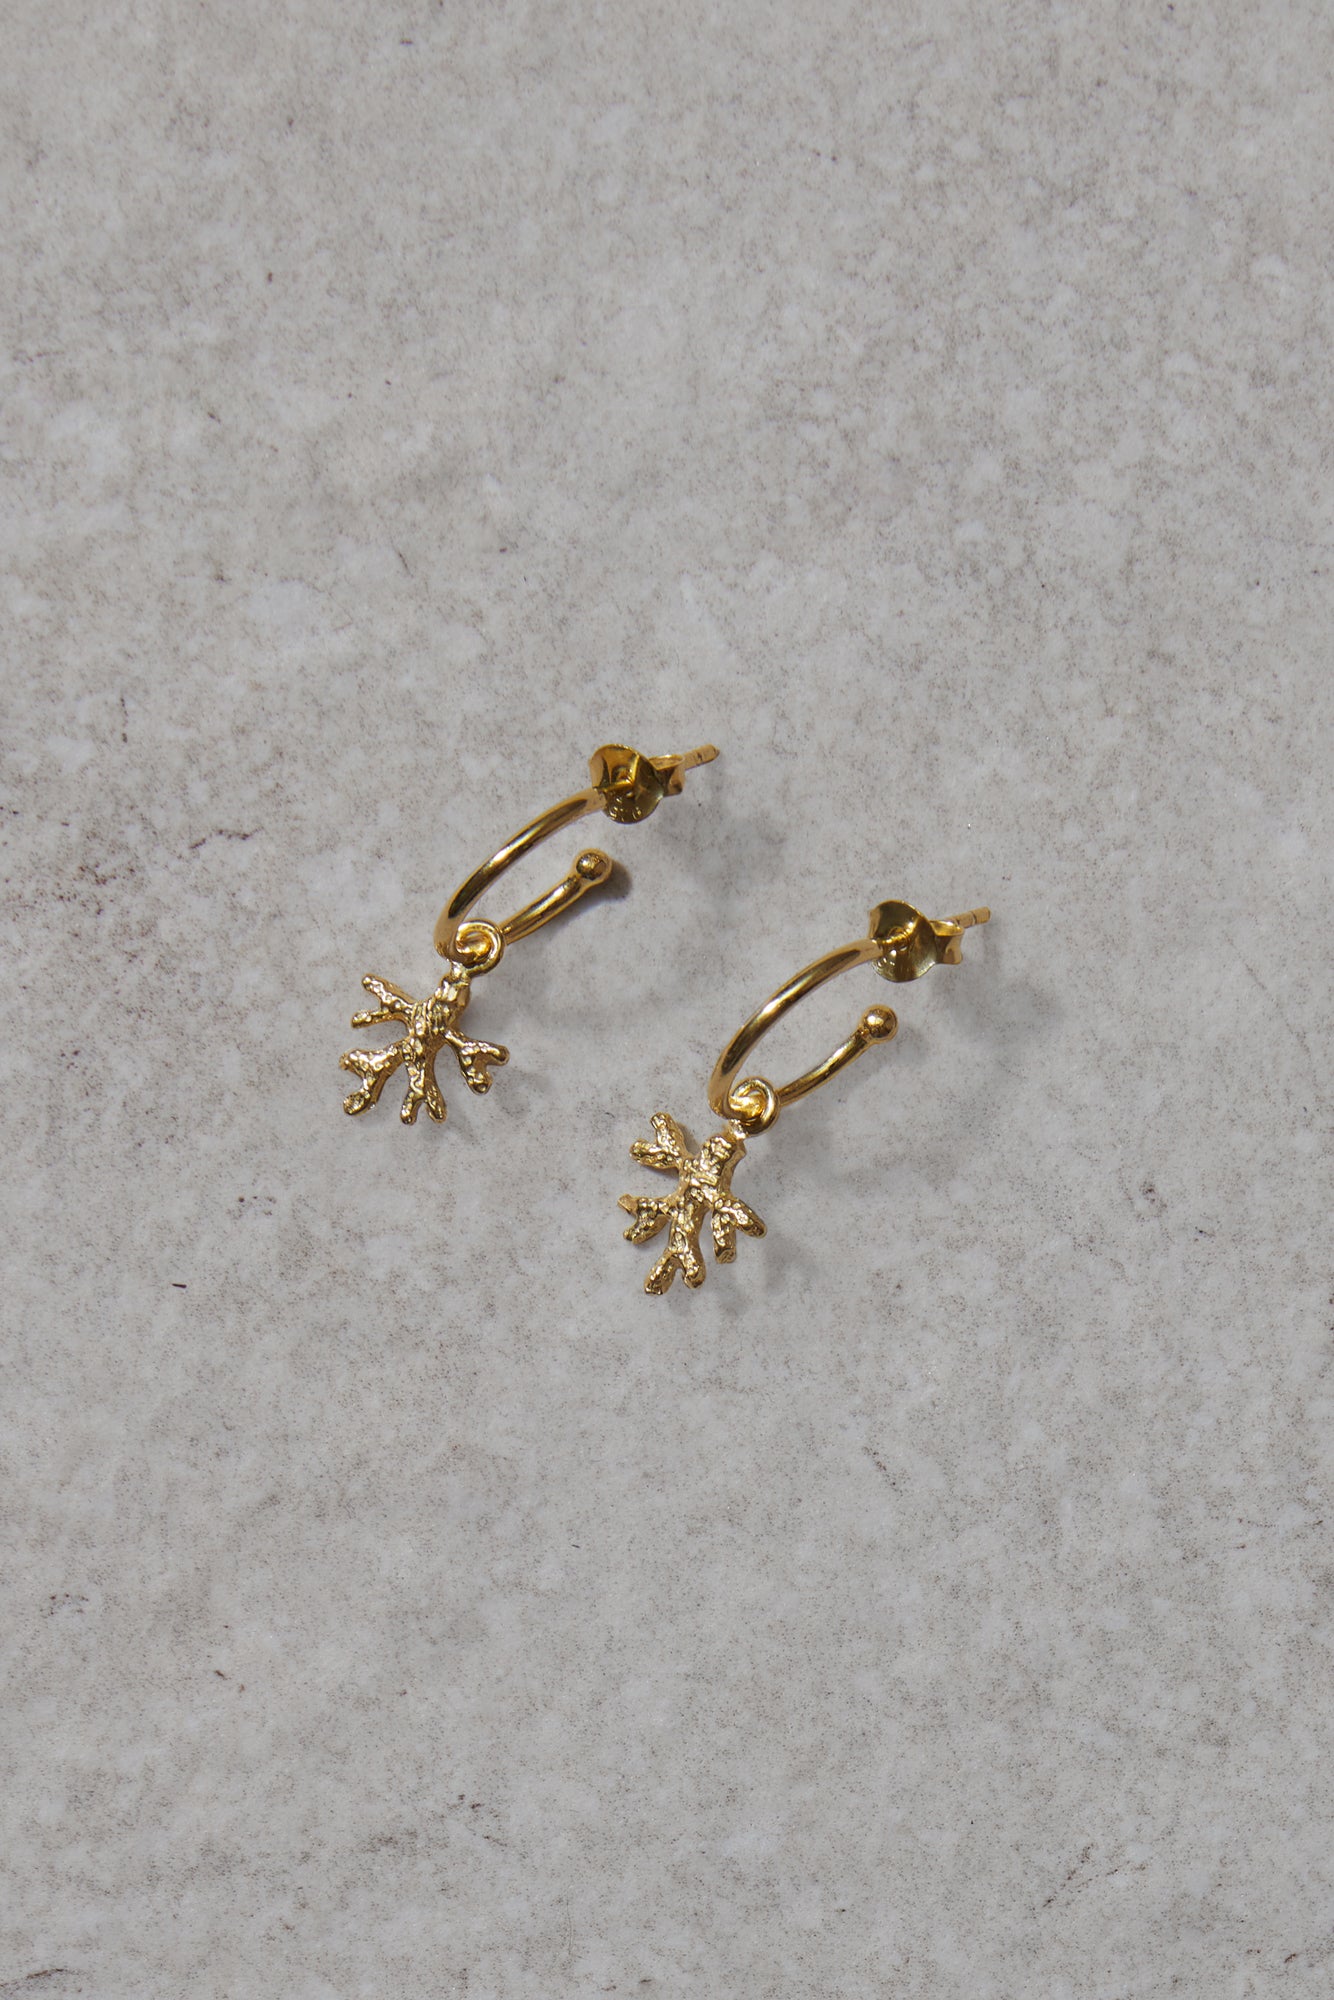 Staghorn coral earrings